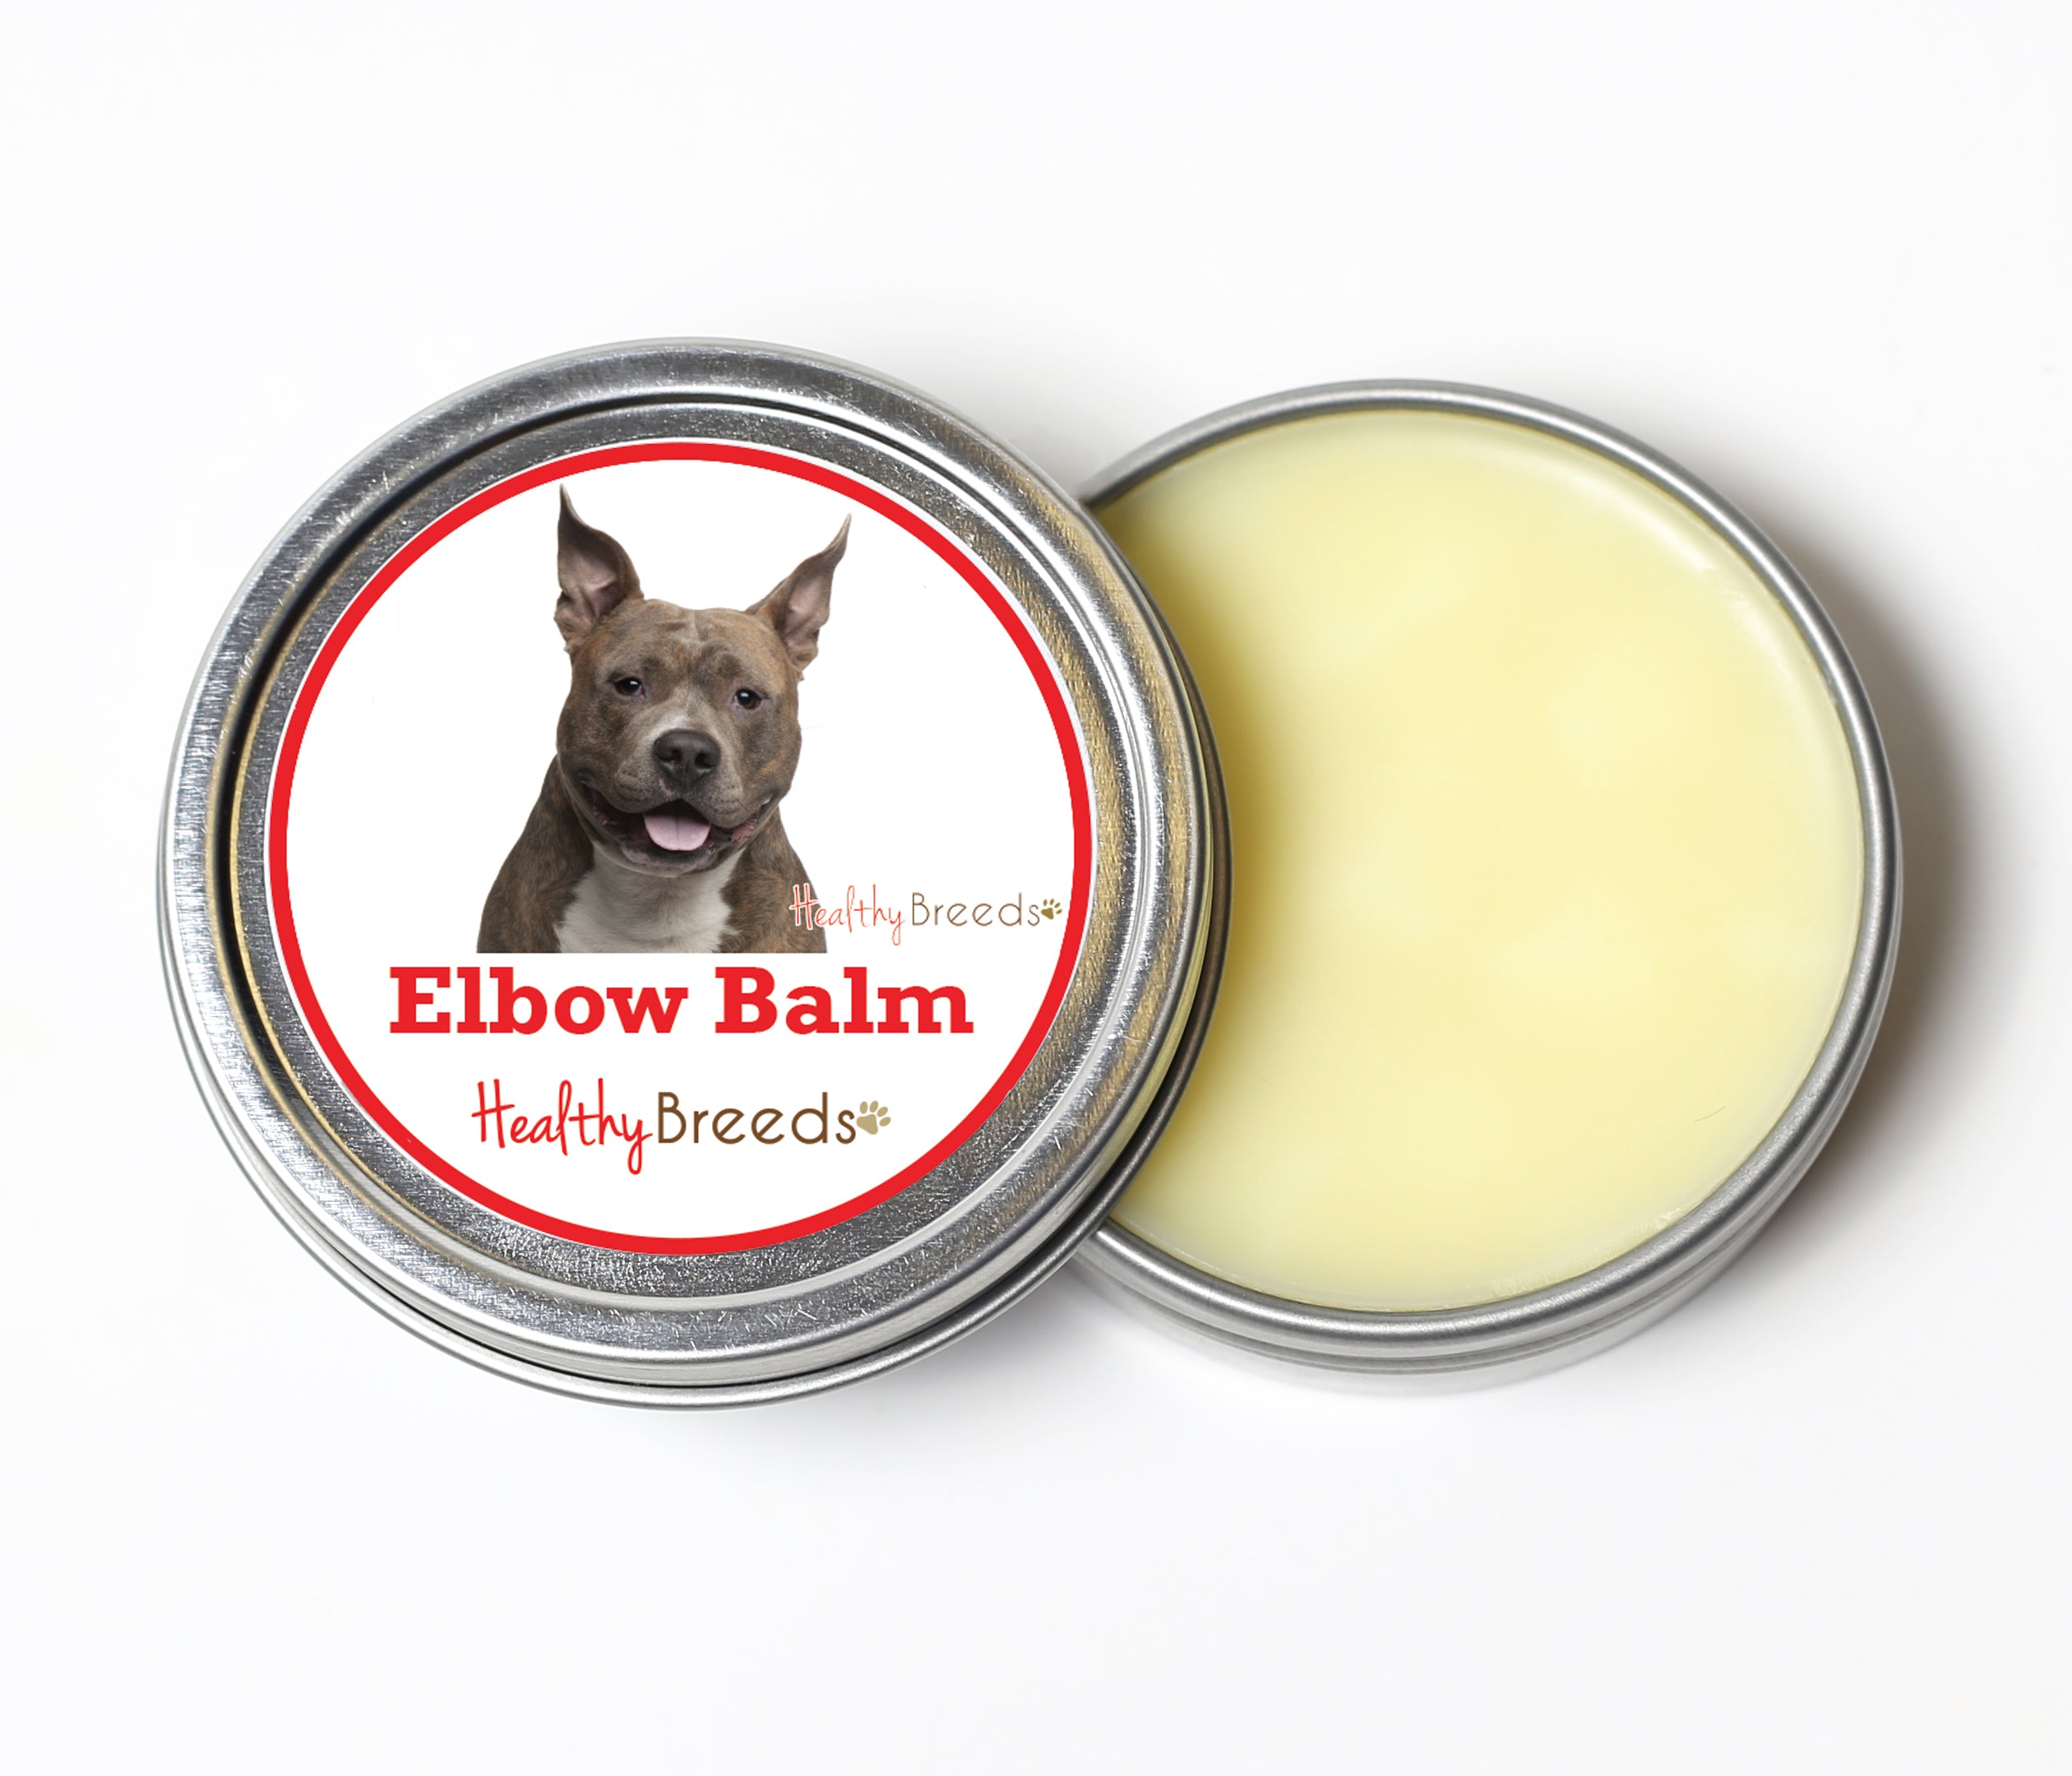 American Staffordshire Terrier Dog Elbow Balm 2 oz